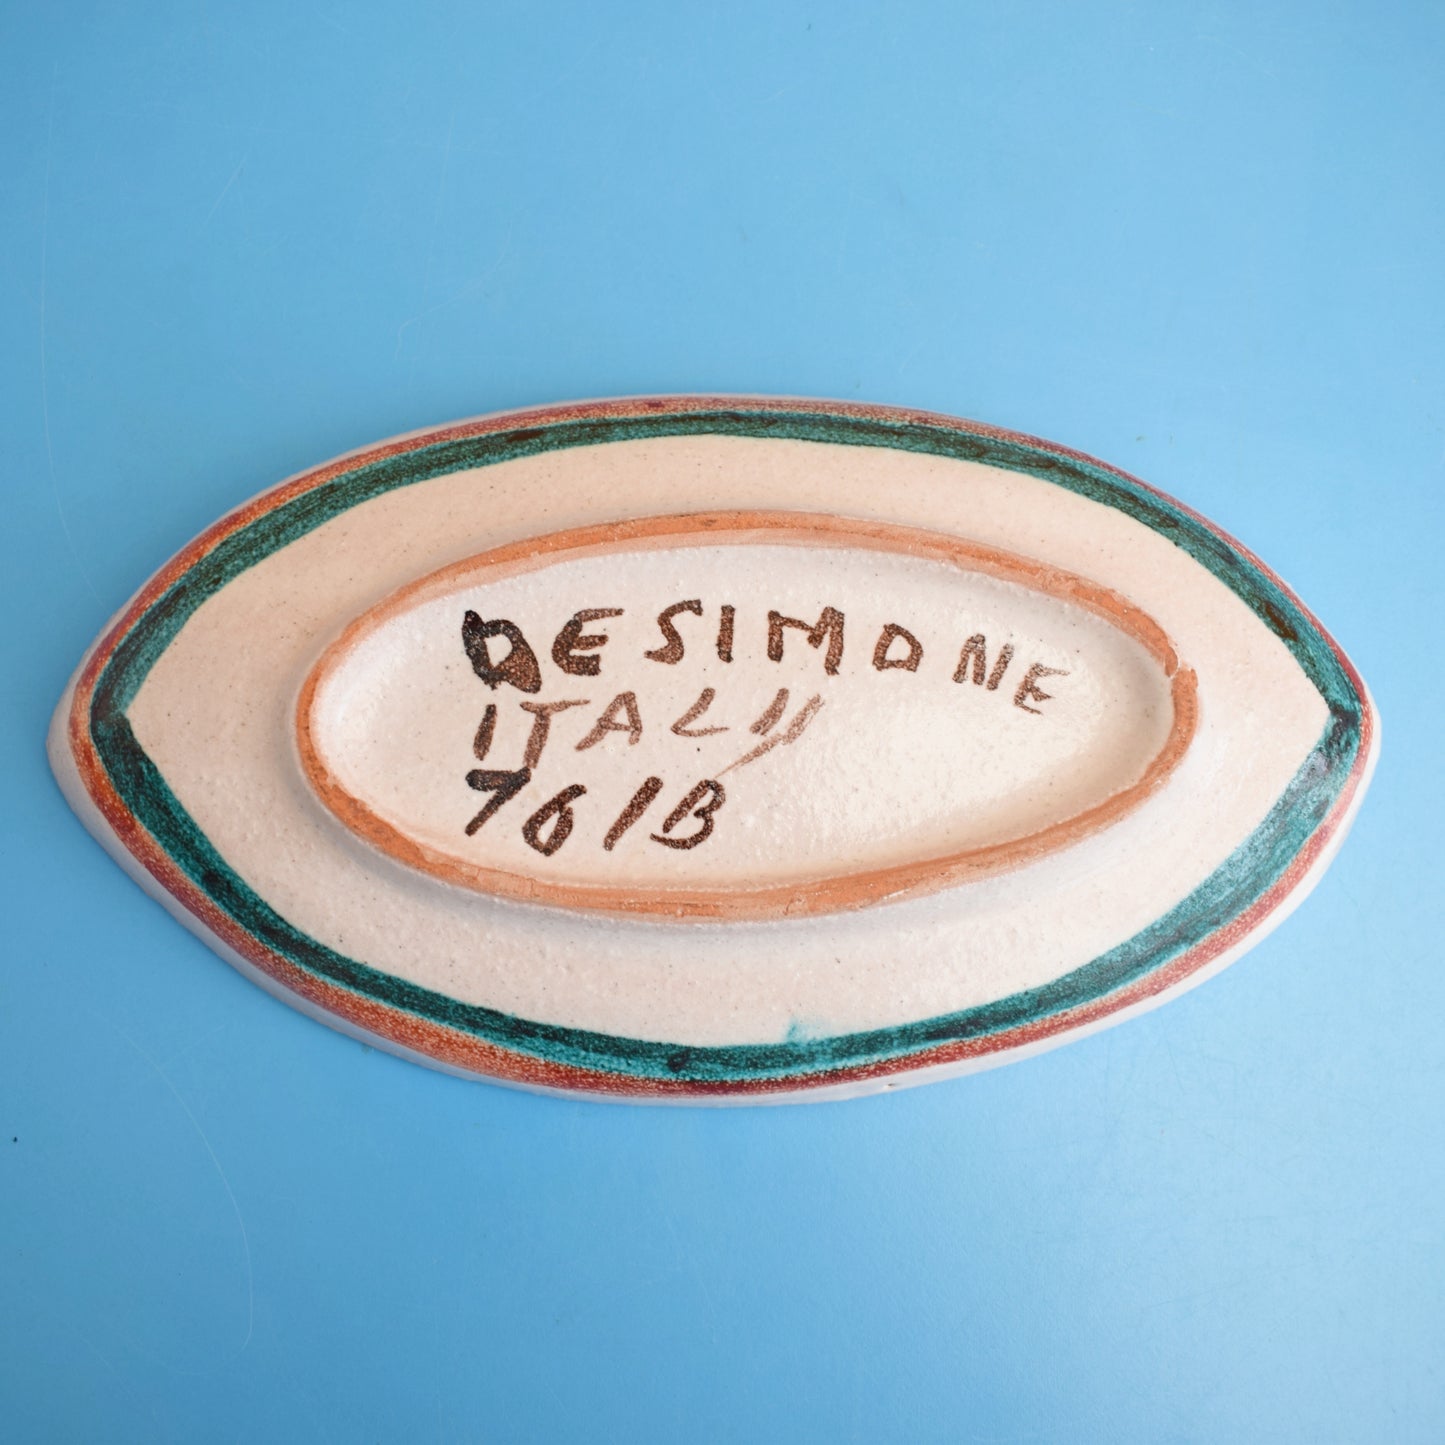 Vintage 1950s Ceramic Dish - Desimone - Italian